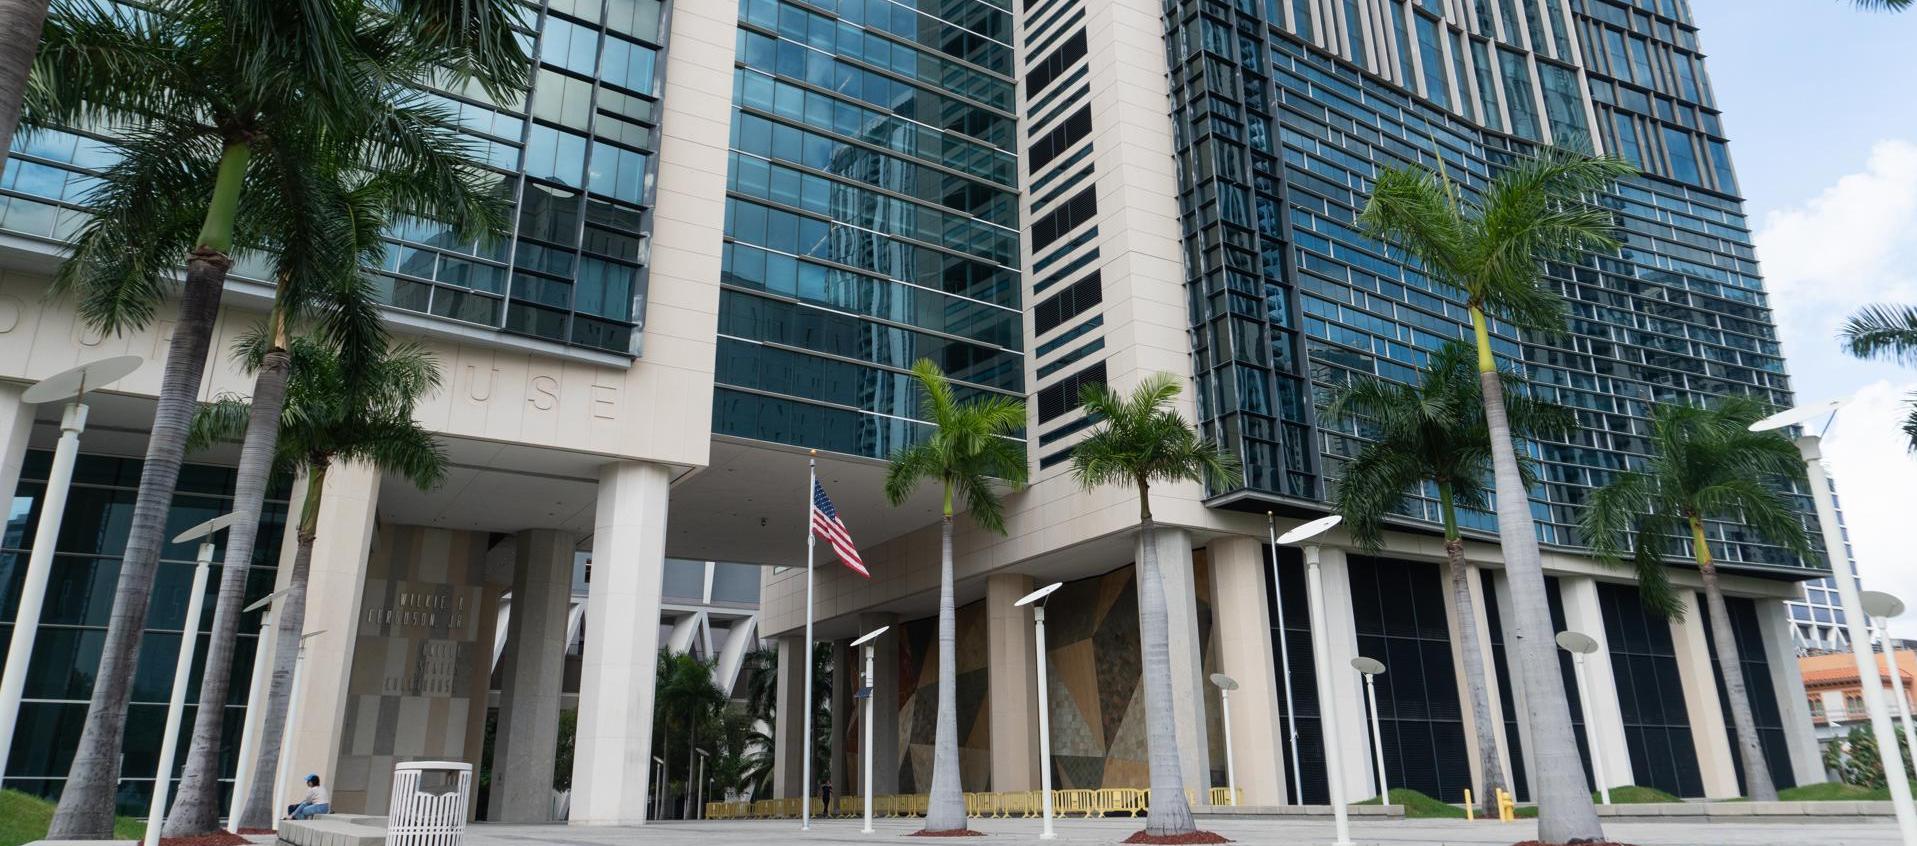 Vista exterior del Palacio de Justicia de Wilkie D. Ferguson en Miami, Estados Unidos, donde se juzga el caso de Alex Saab.